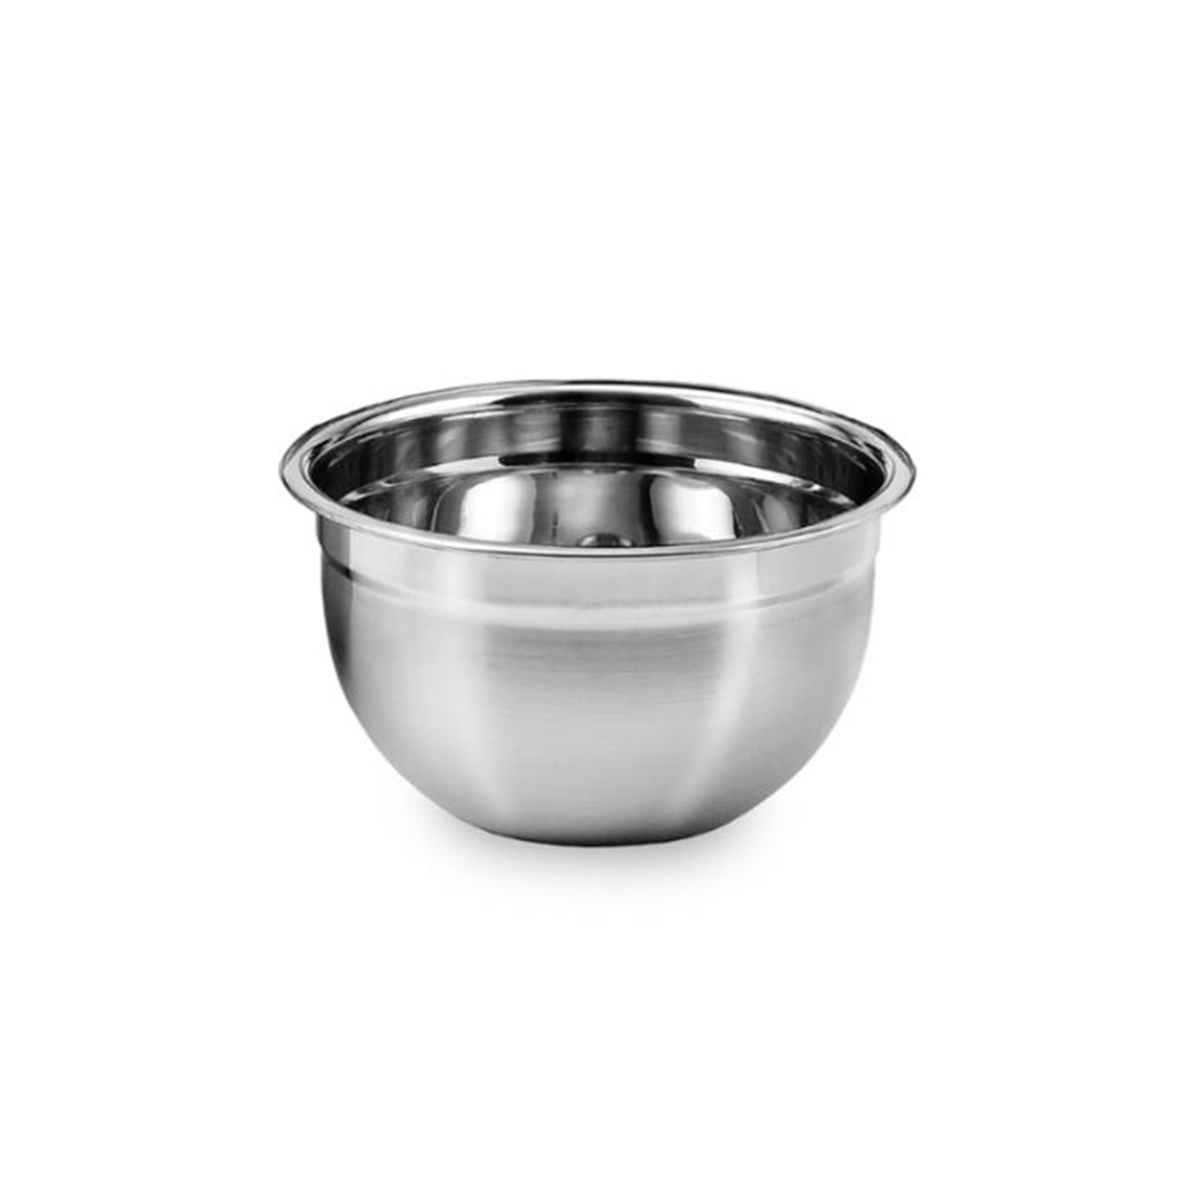 Tigela Mixing Bowl Em Aço Inox 18 Cm Pratica e Durável Ke Home 3116-18-1